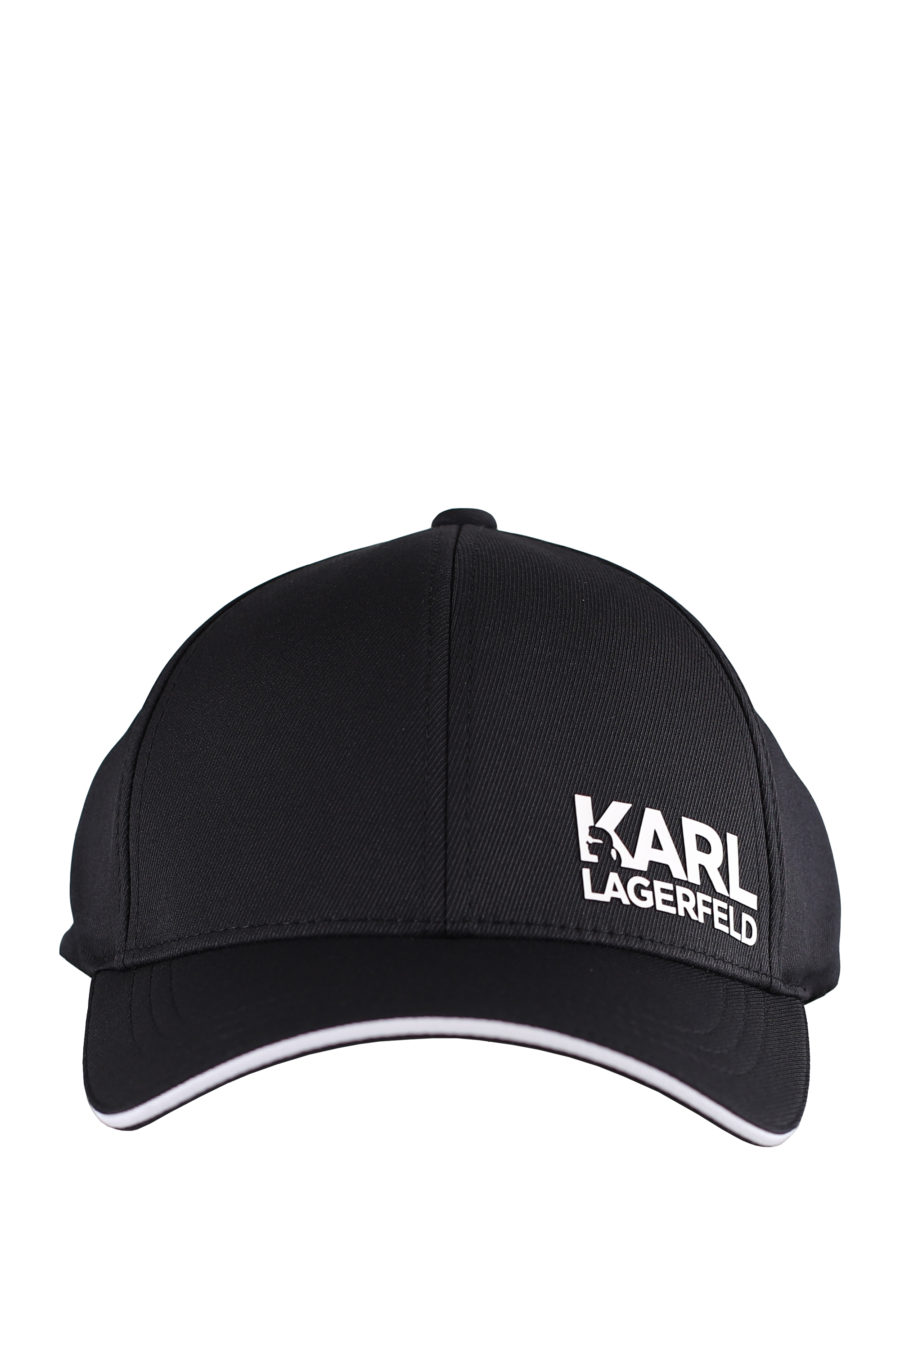 Boné preto com o logótipo "Karl" branco - IMG 9593